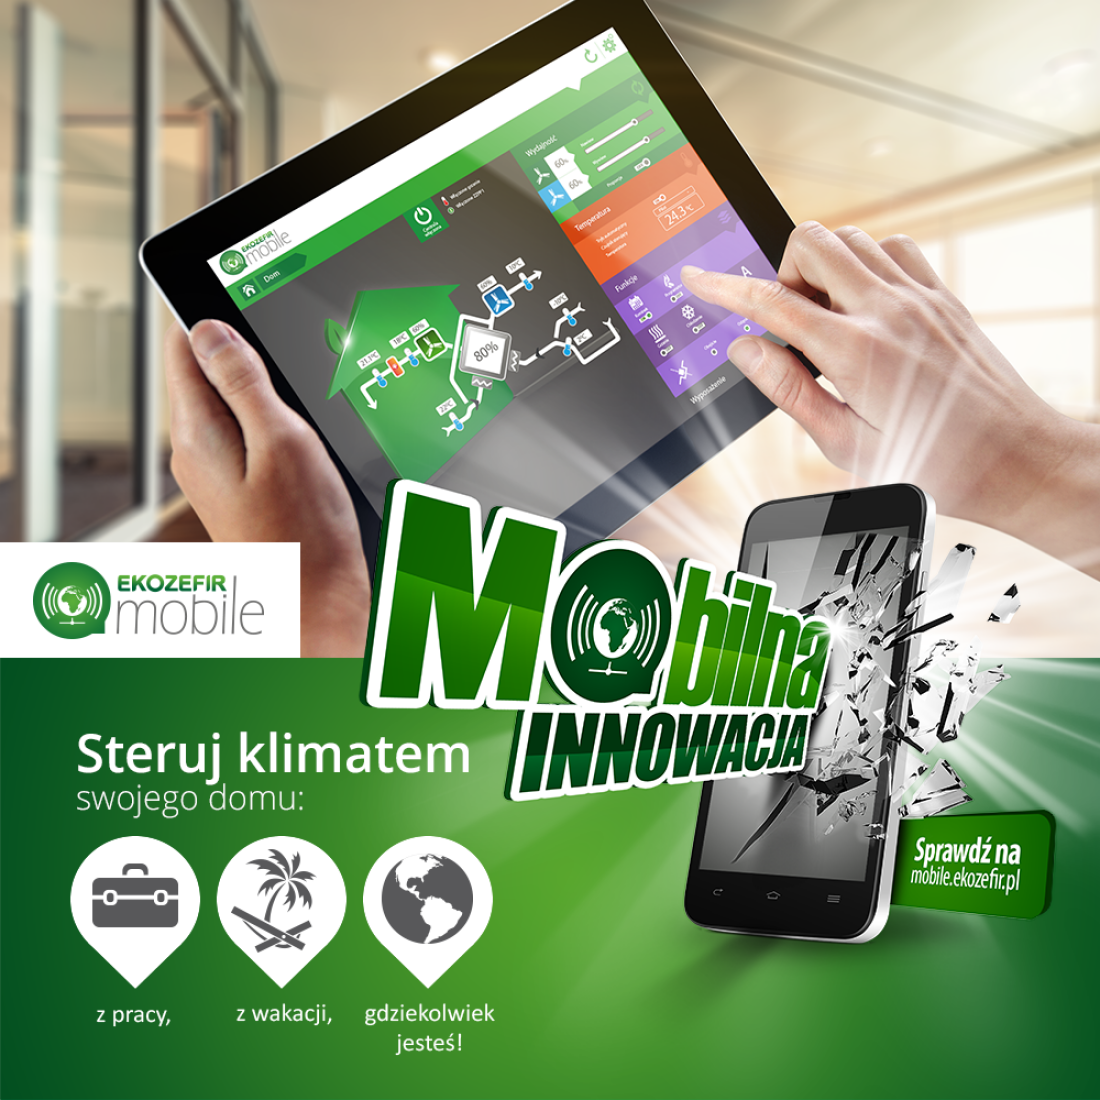 Mobilna innowacja - aplikacja mobilna Ekozefir Mobile